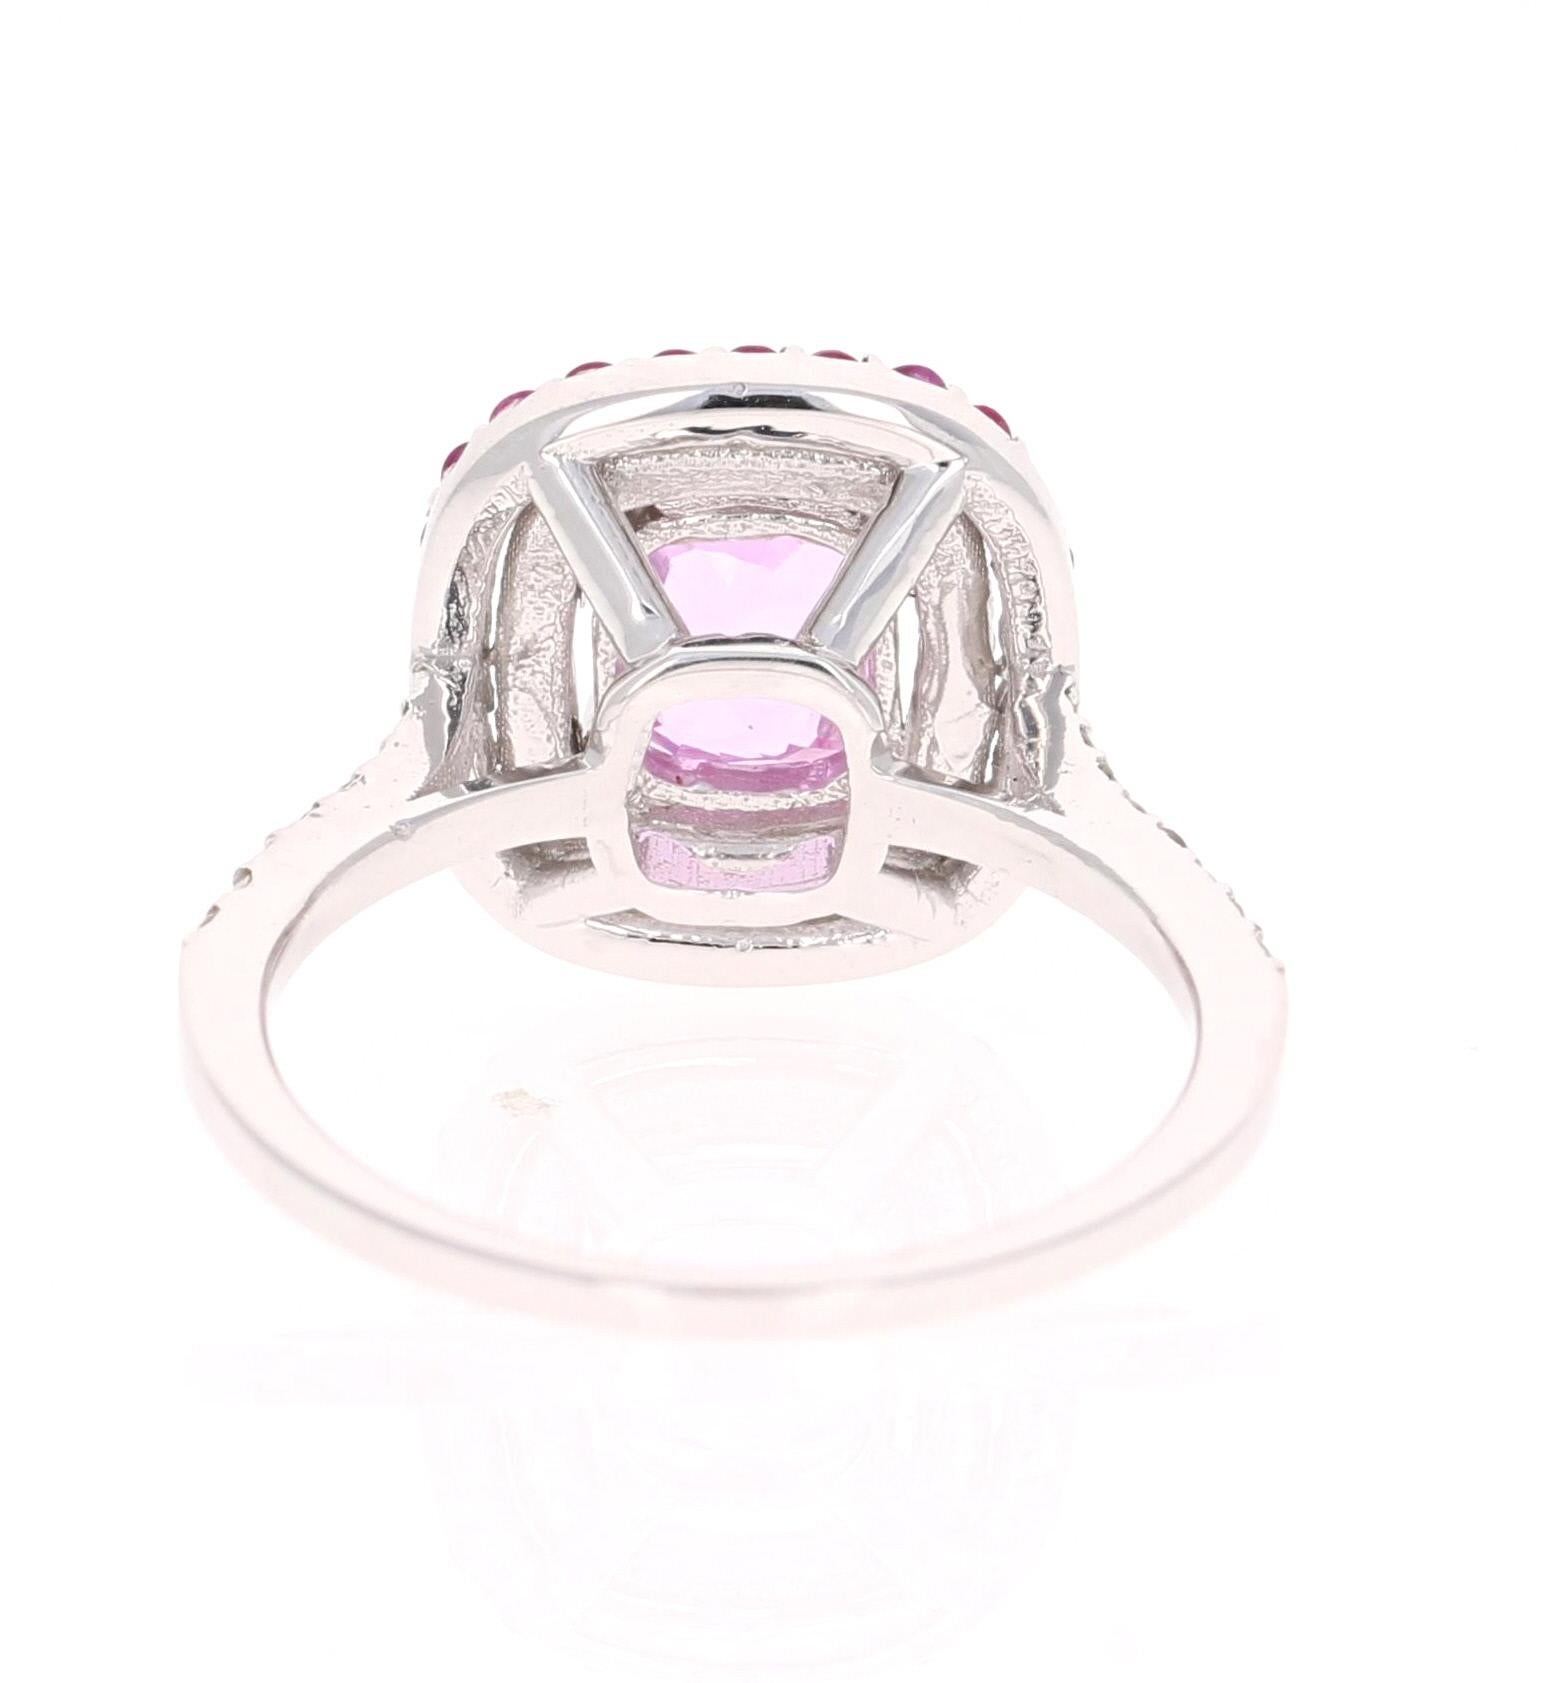 Women's 2.32 Carat Cushion Cut Pink Sapphire Diamond 18 Karat White Gold Engagement Ring